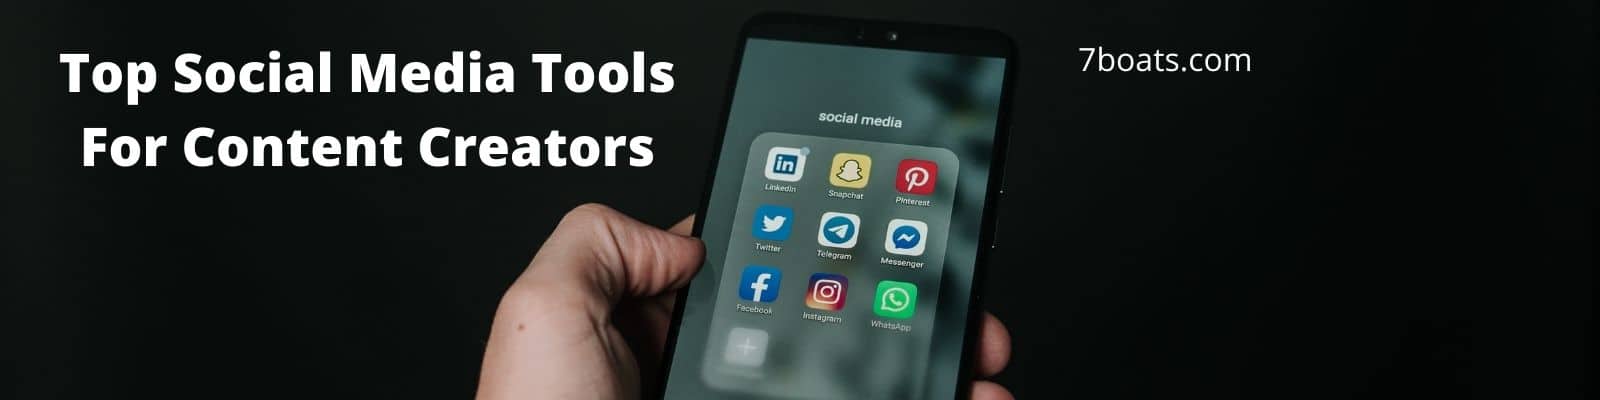 Top 11 Social Media Tools for Content Creators